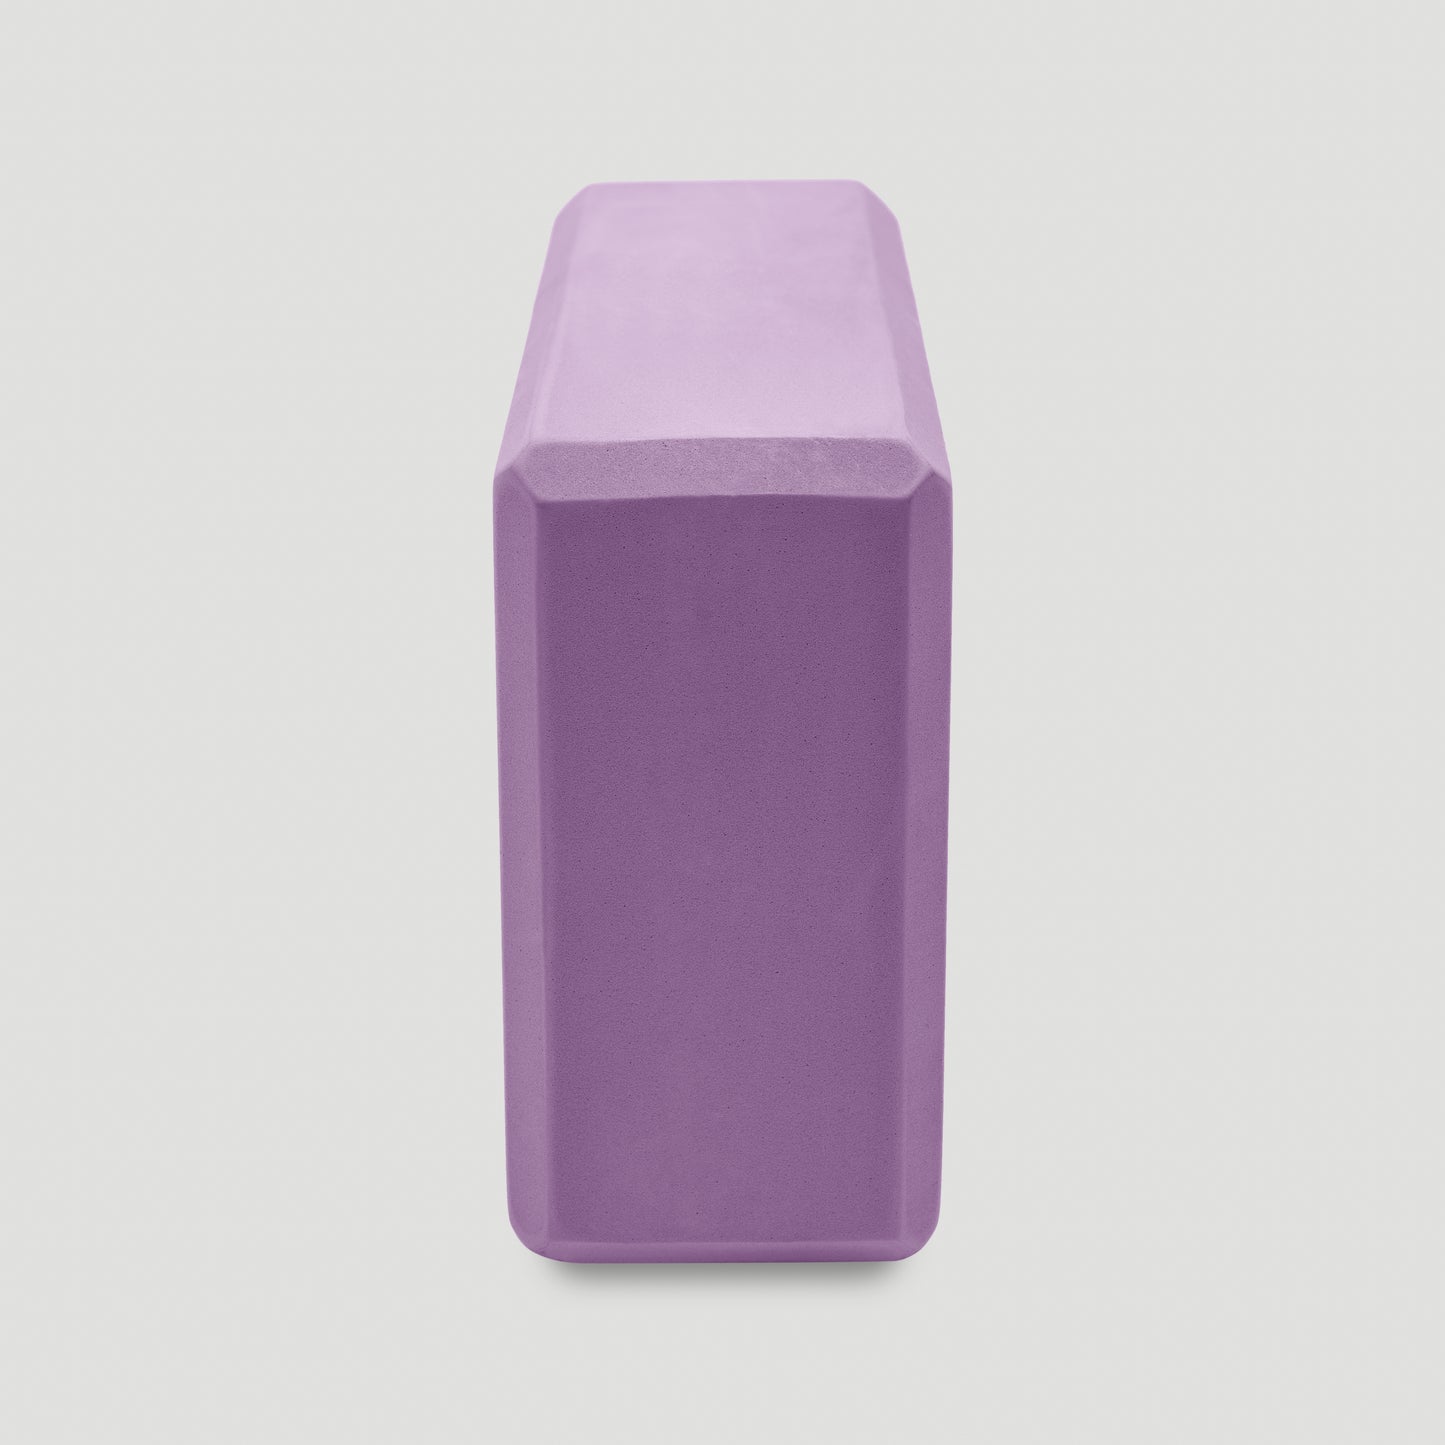 Elevating Yoga Blocks - 2 Purple